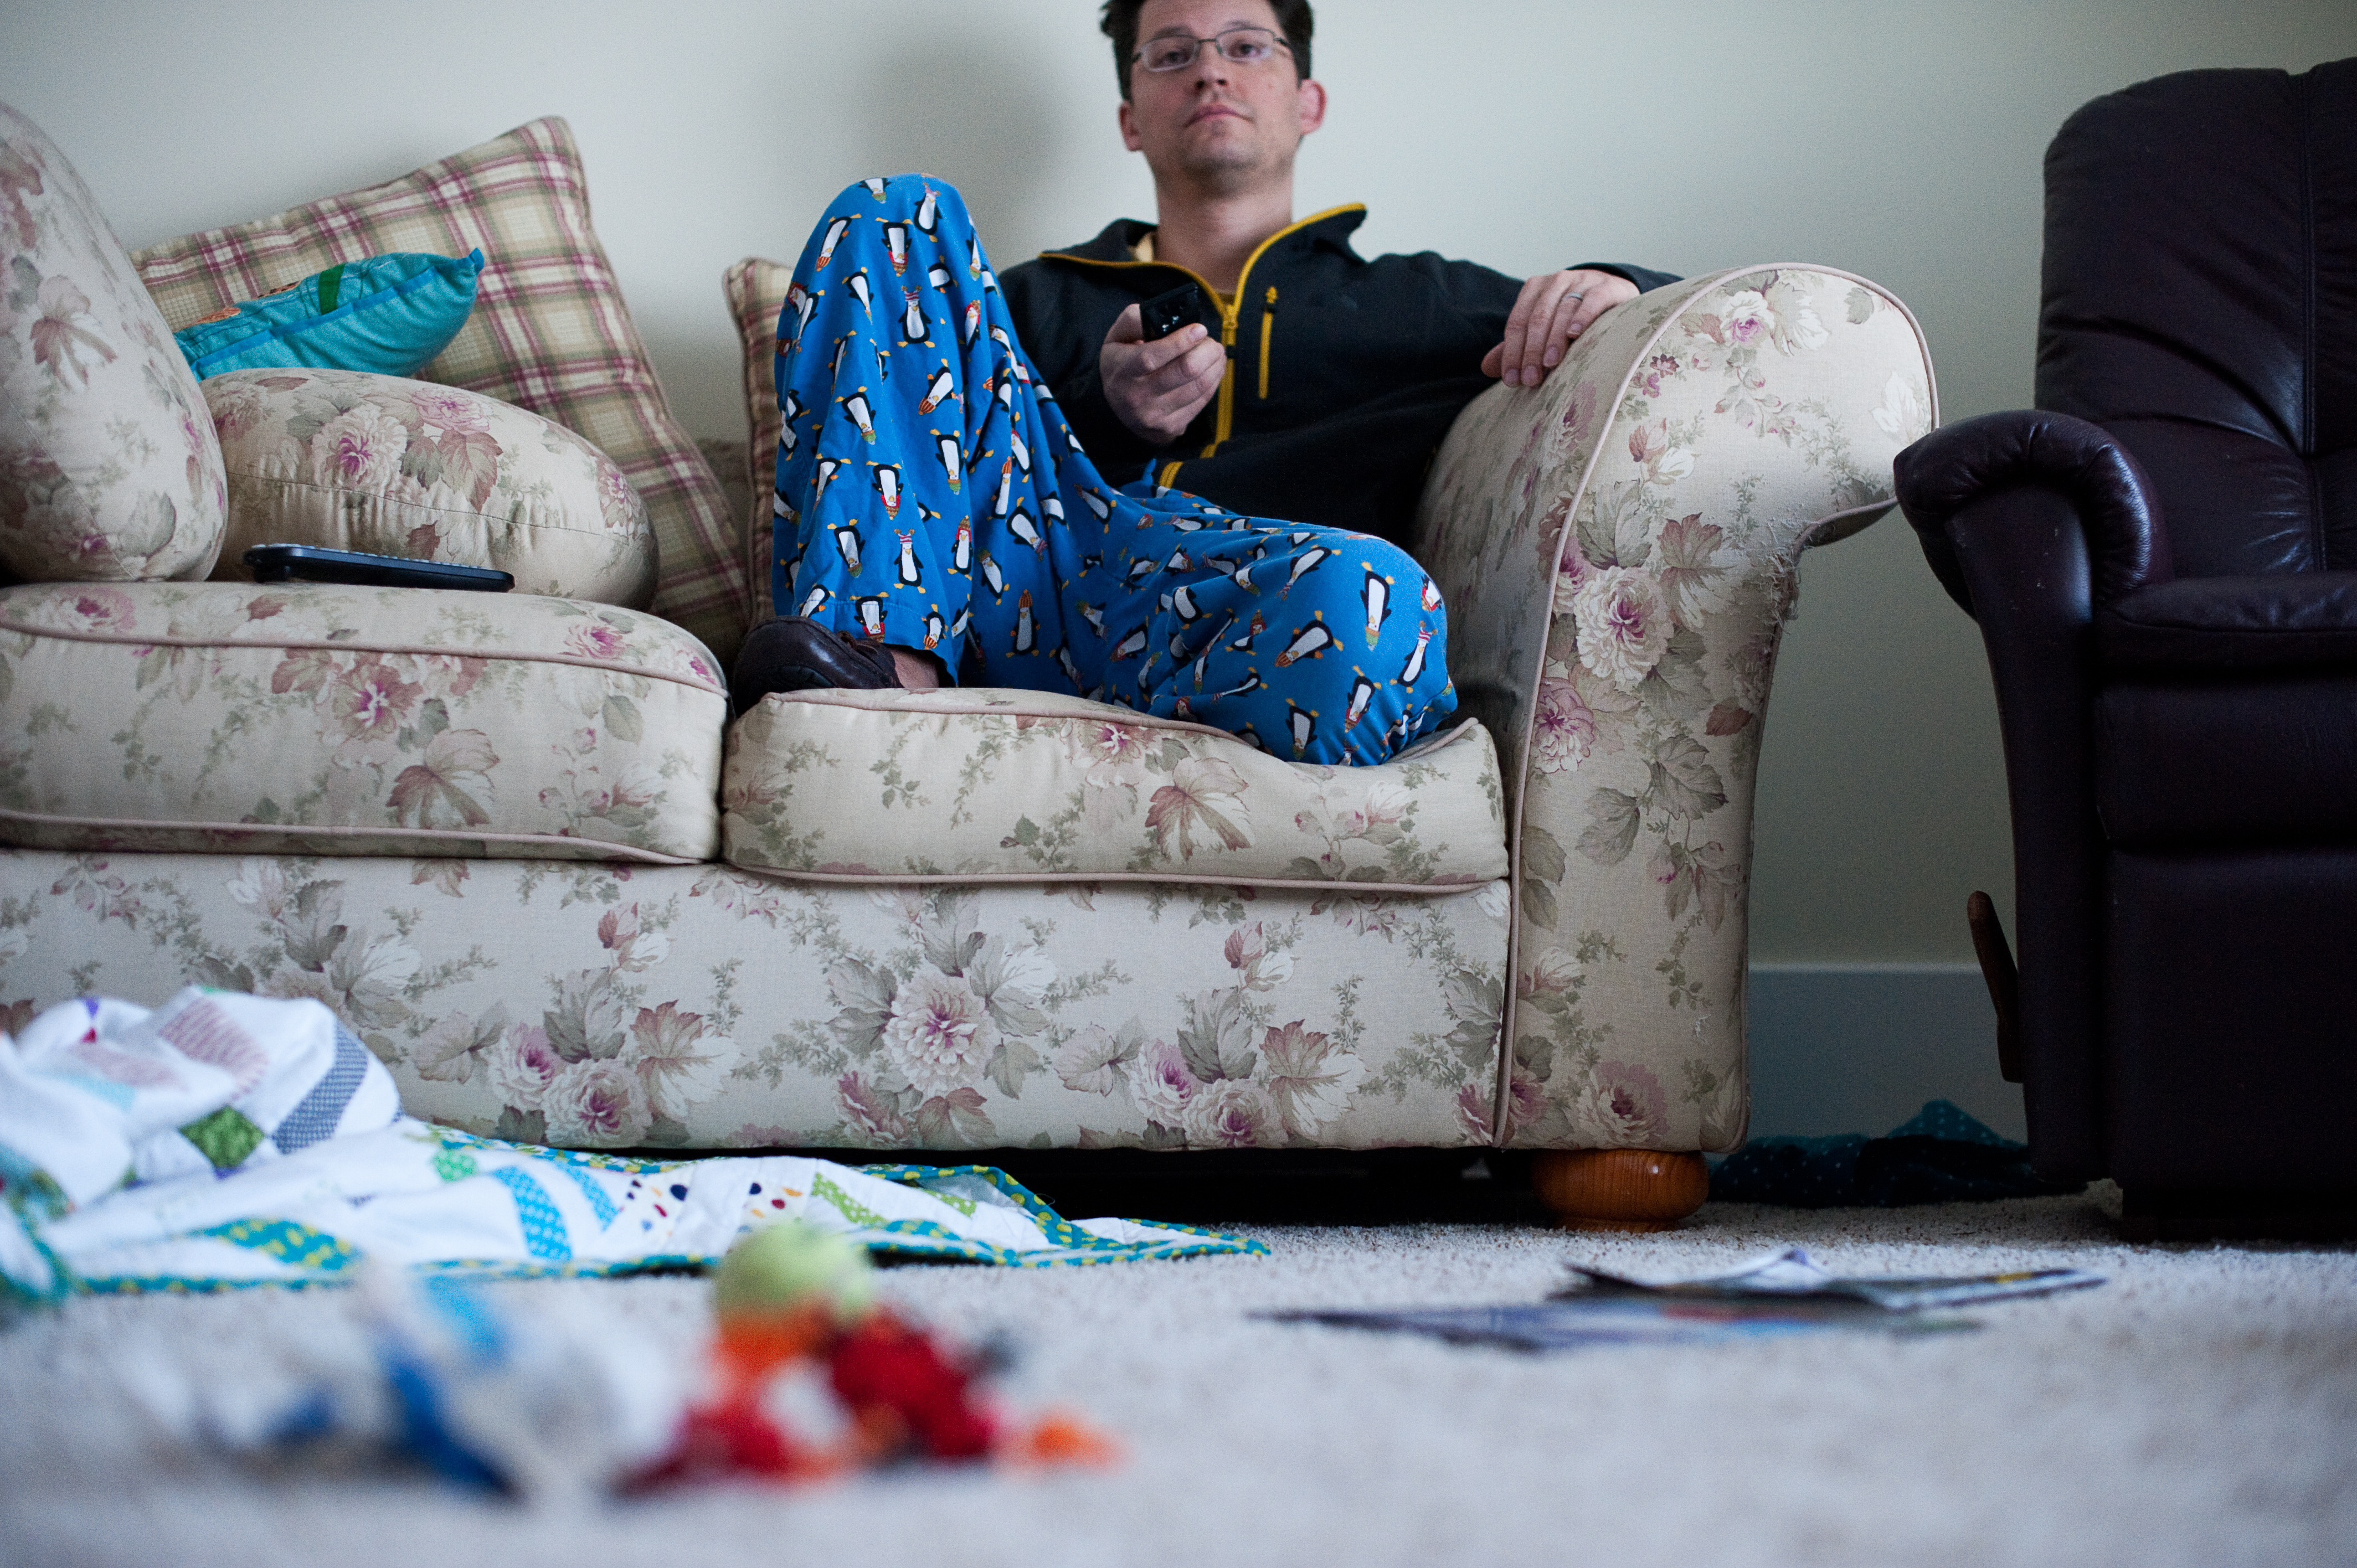 Un perezoso sentado viendo la televisión con la casa desordenada | Fuente: Getty Images